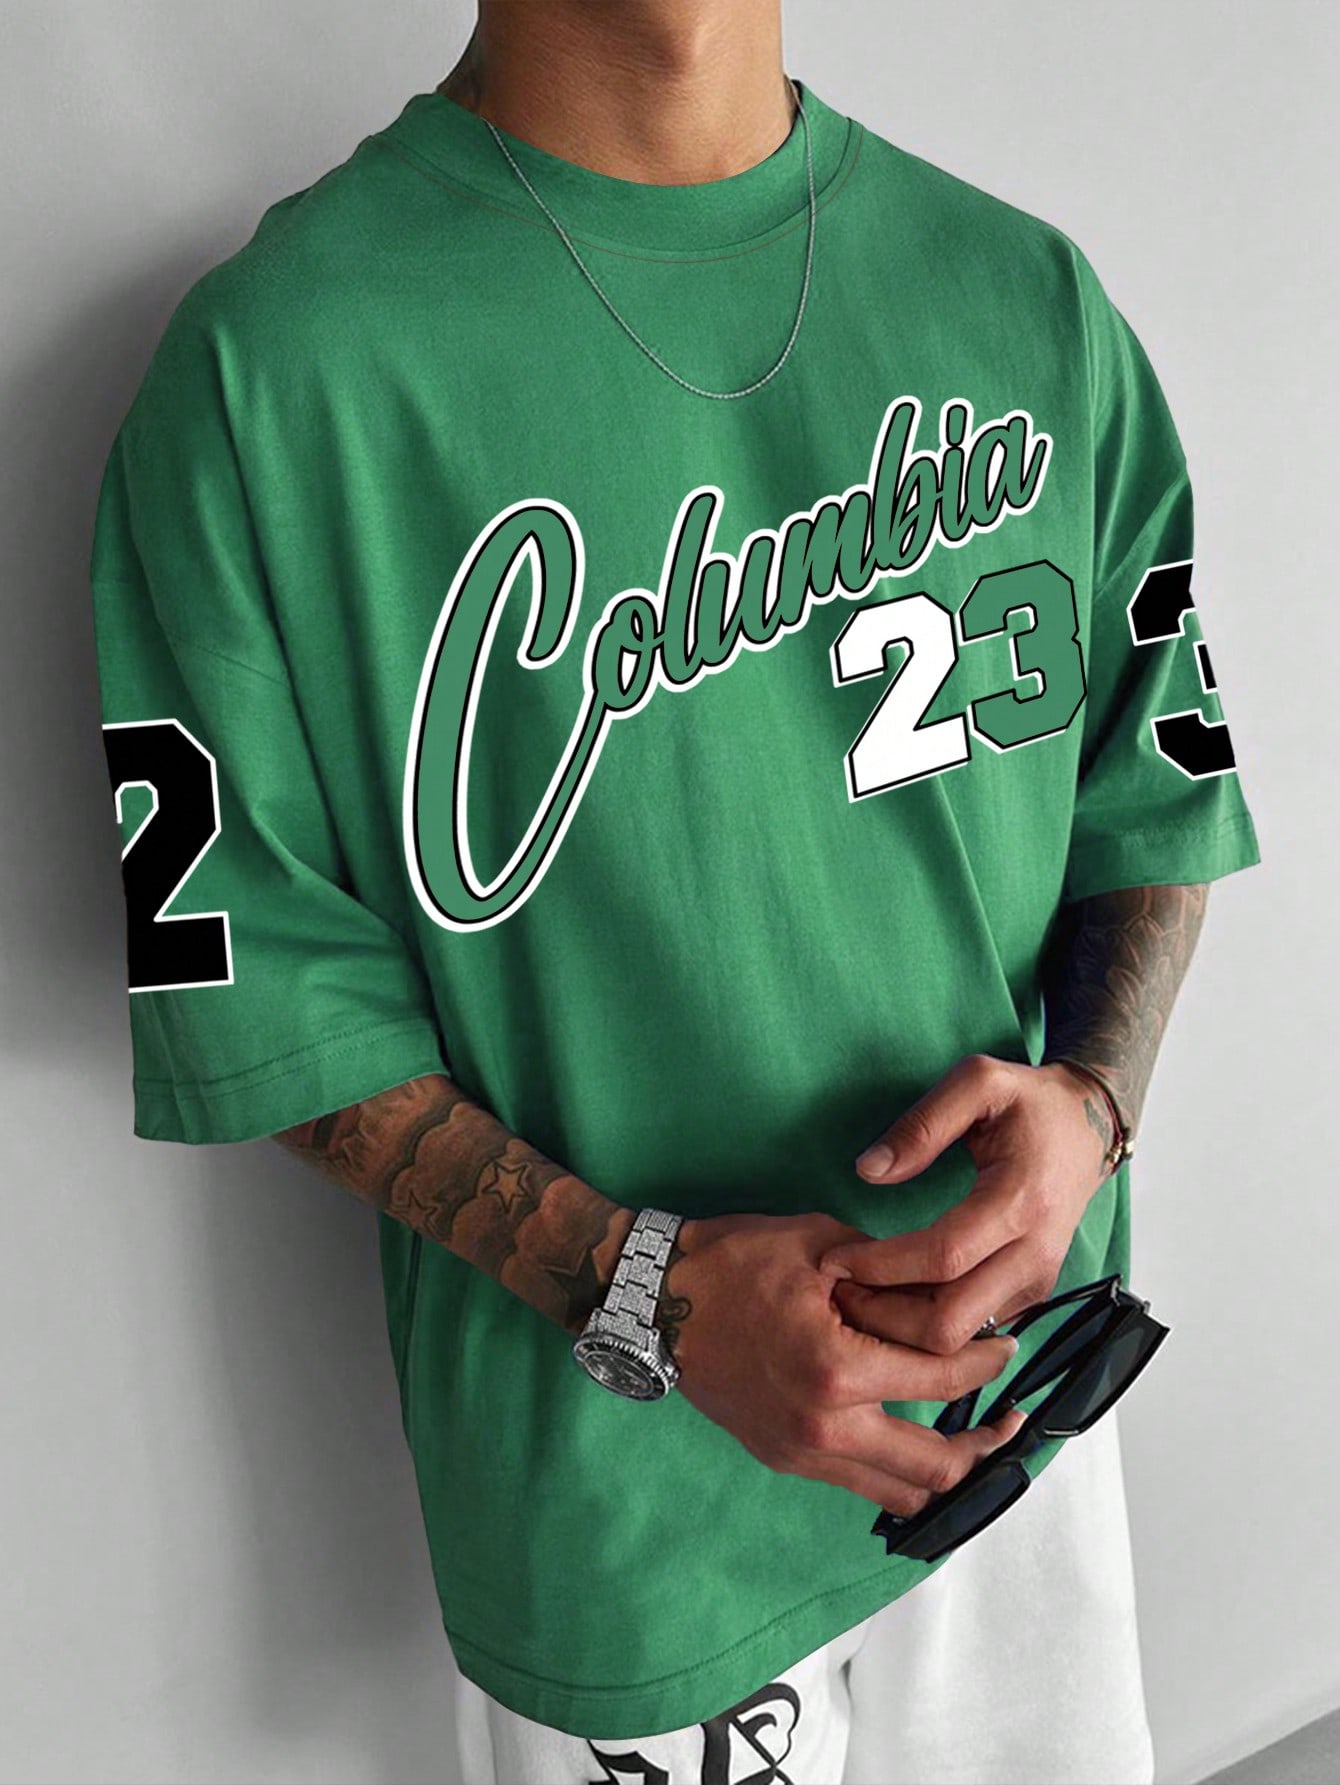 цена Мужская футболка большого размера с заниженными плечами и короткими рукавами Manfinity Sporsity с буквенным принтом, зеленый